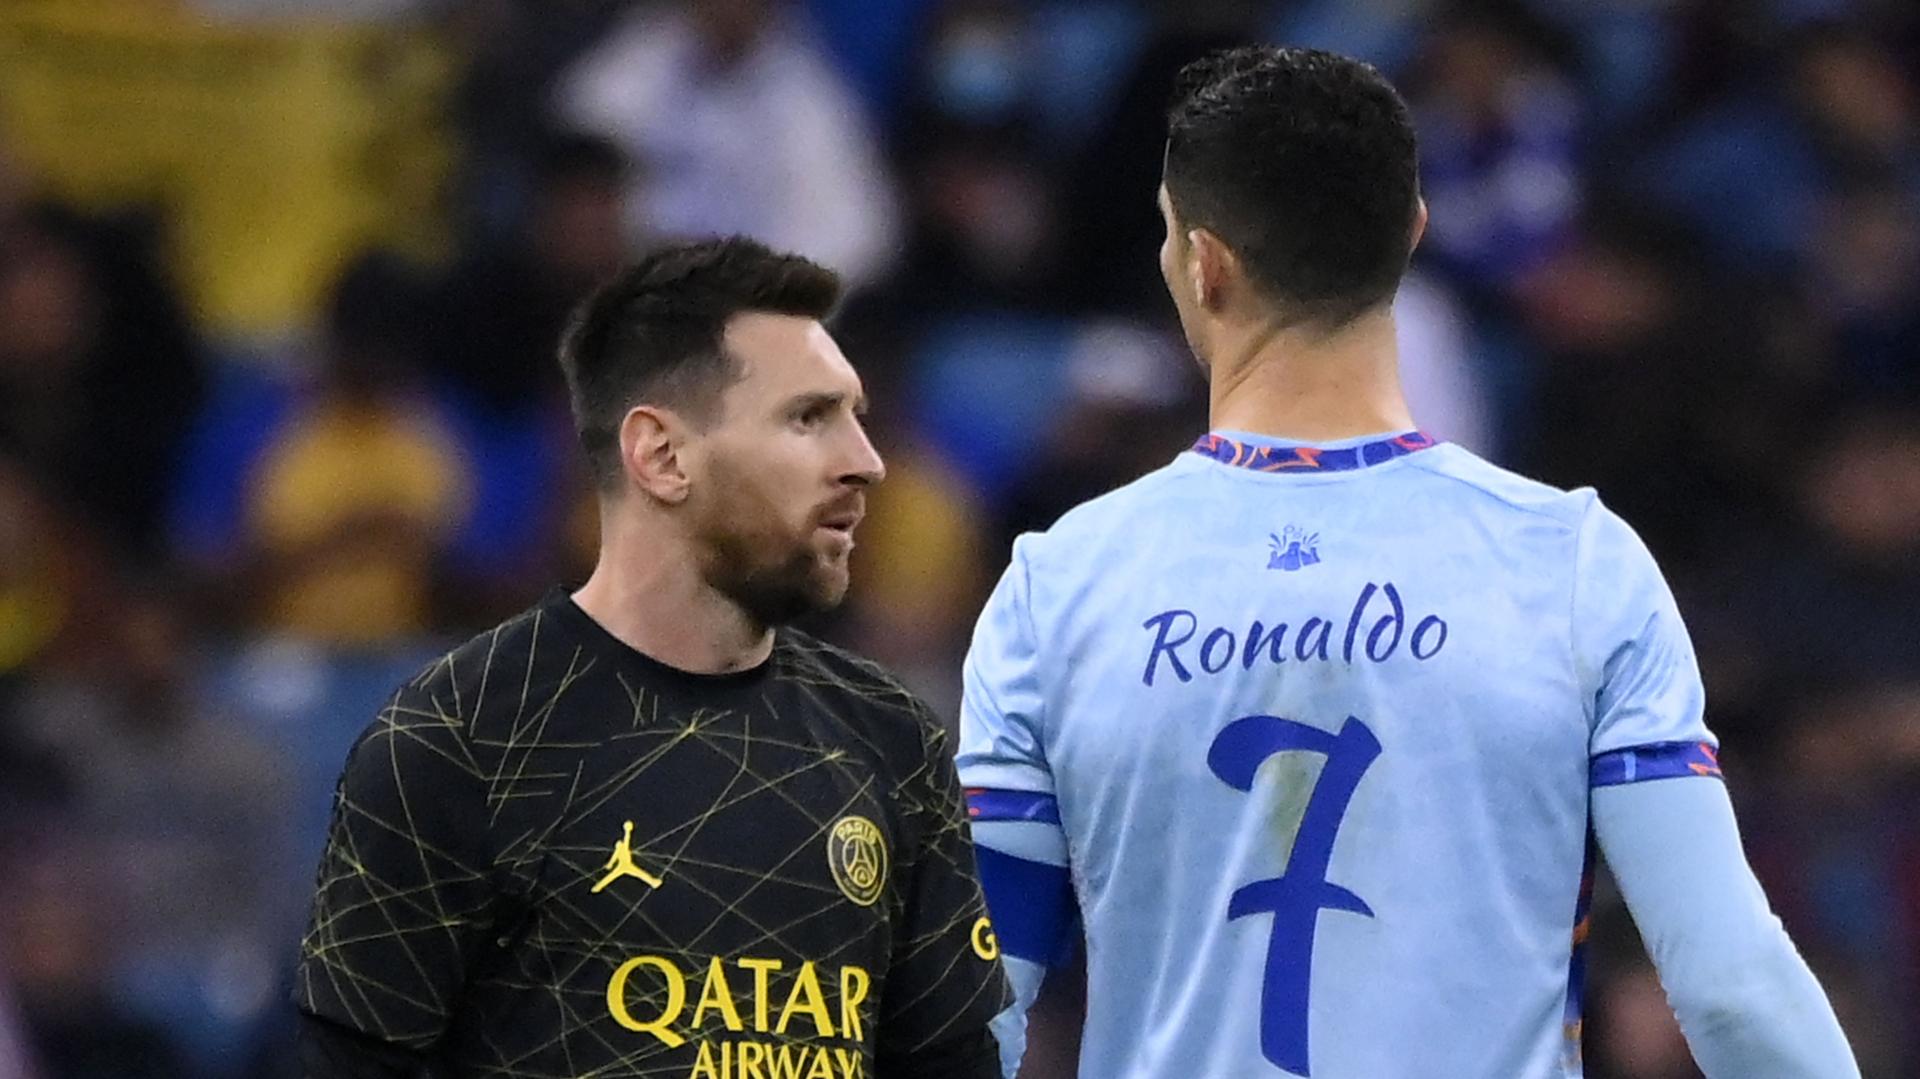 Ronaldo and Messi reunite in blockbuster showdown in Qatar but was